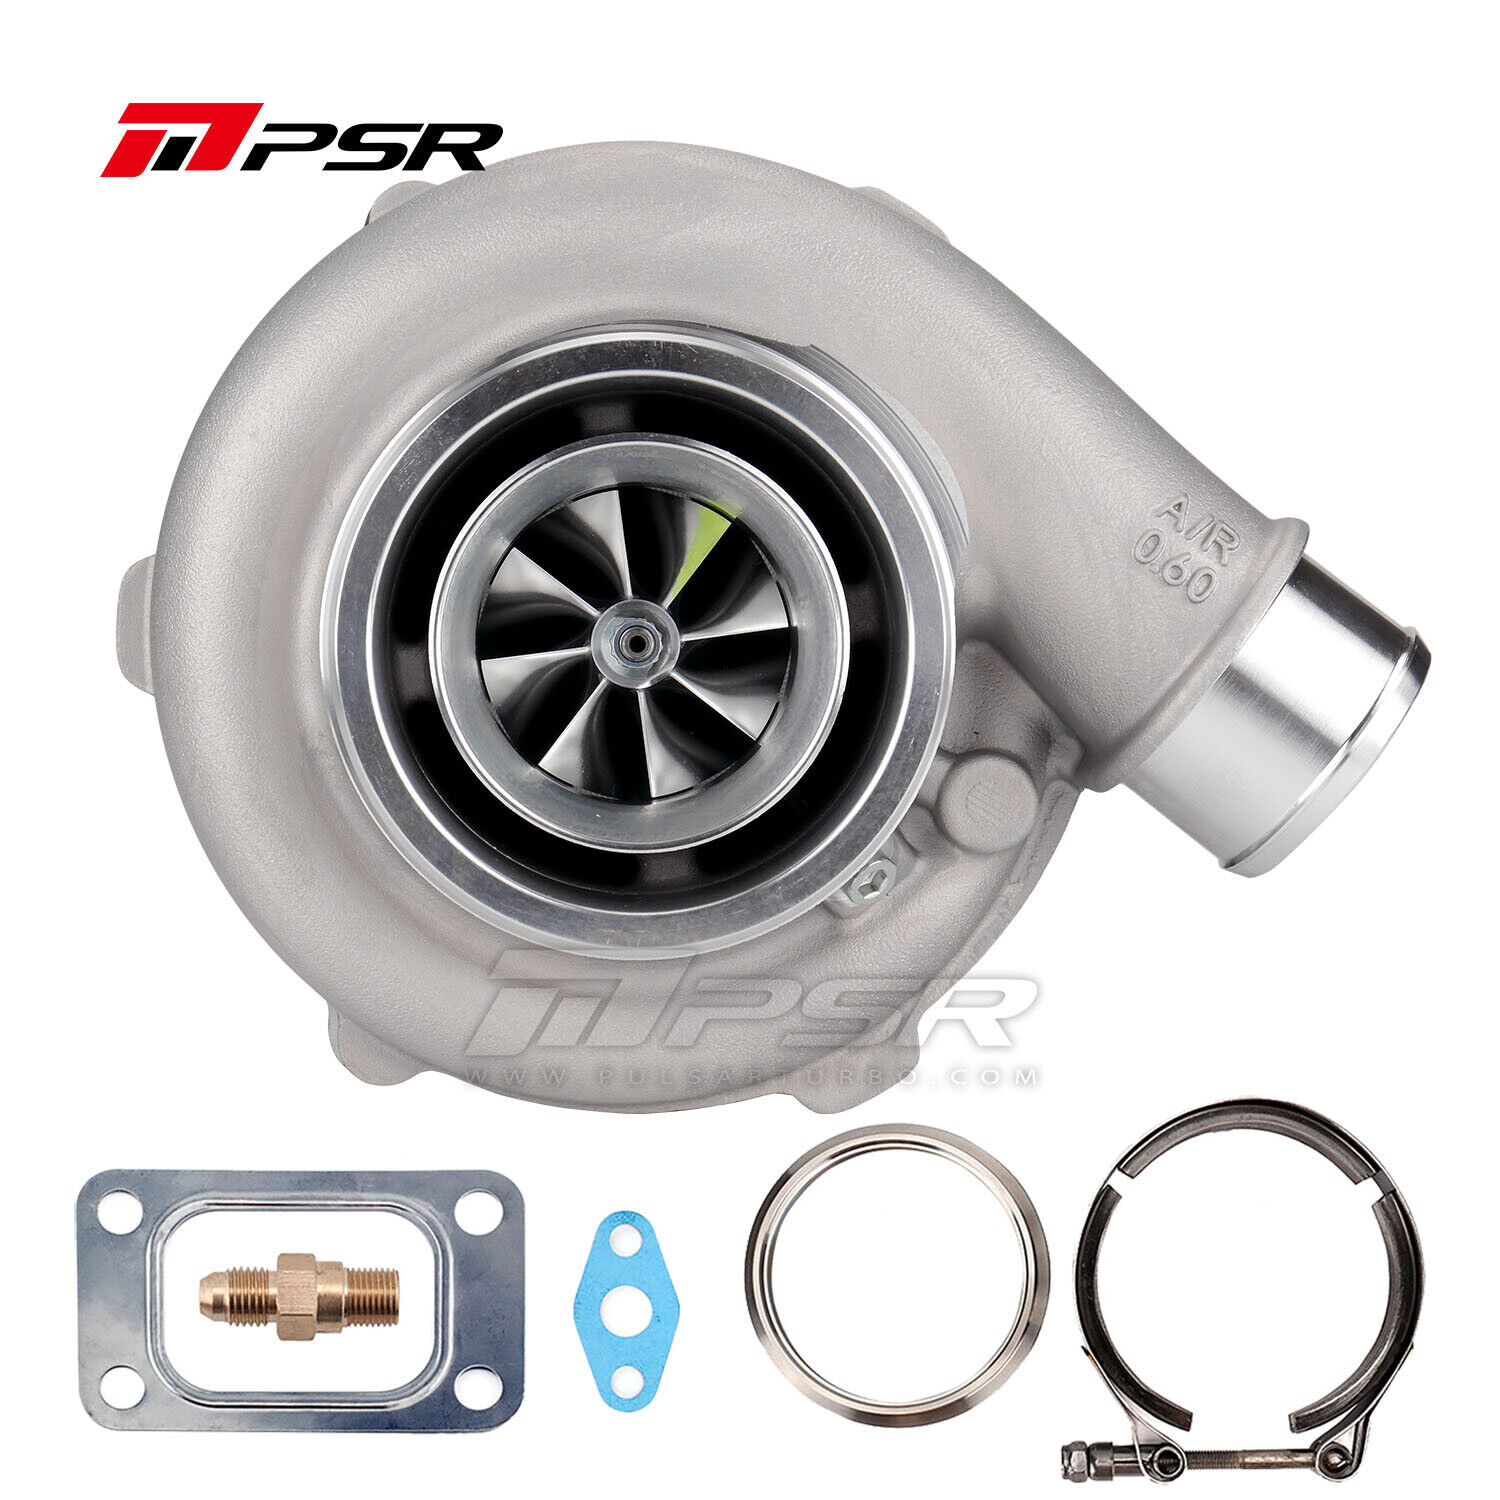 Pulsar Turbo PSR3071 GEN II Ball Bearing Turbo T3 0.82A/R Turbine Turbocharger